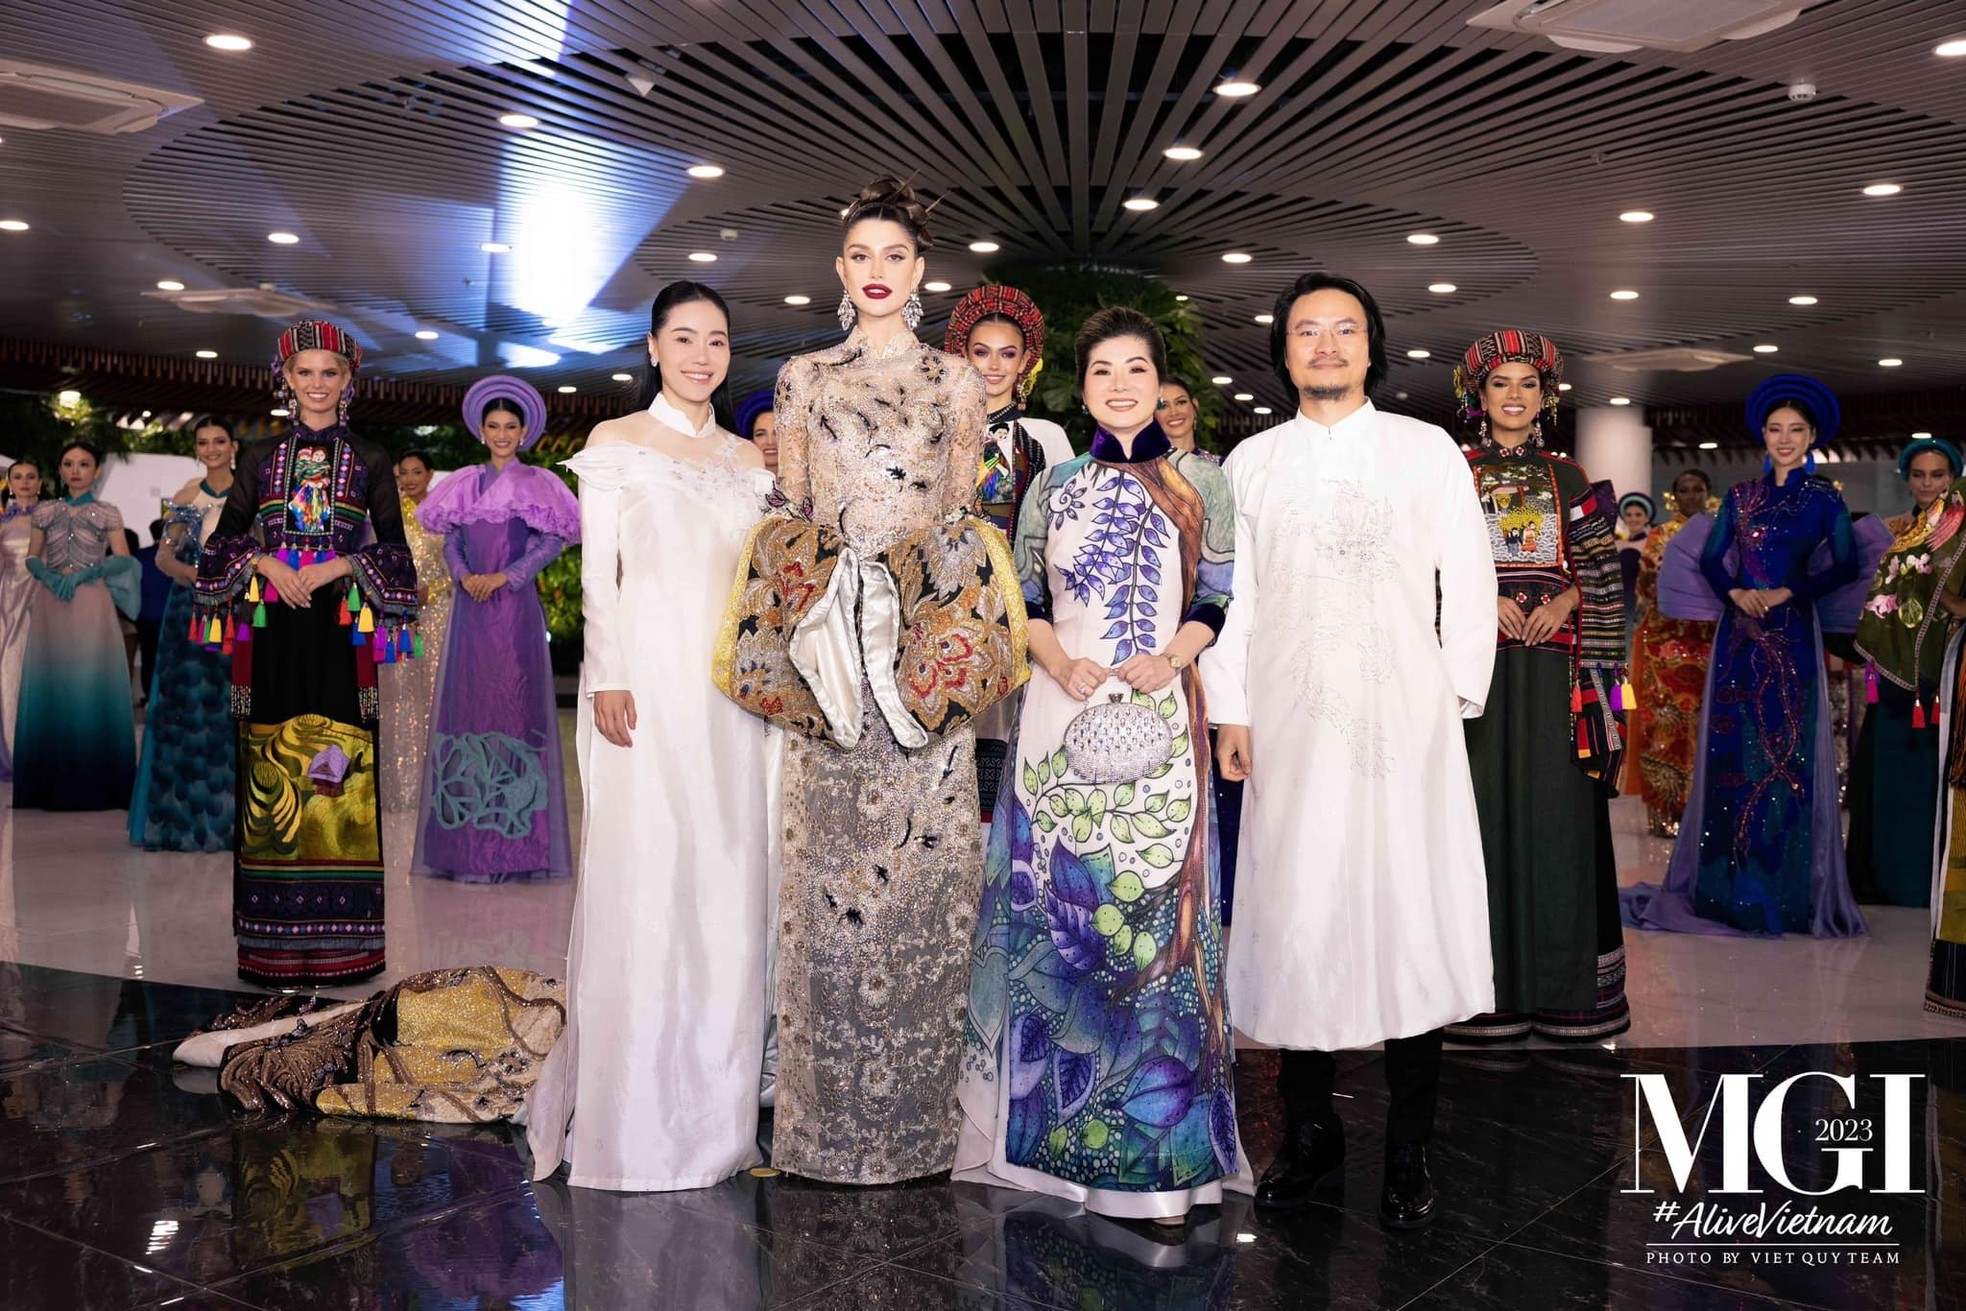 Thưởng Tết ở công ty giải trí, quản lý hoa hậu Việt có hơn 200 nhân viên - Ảnh 3.